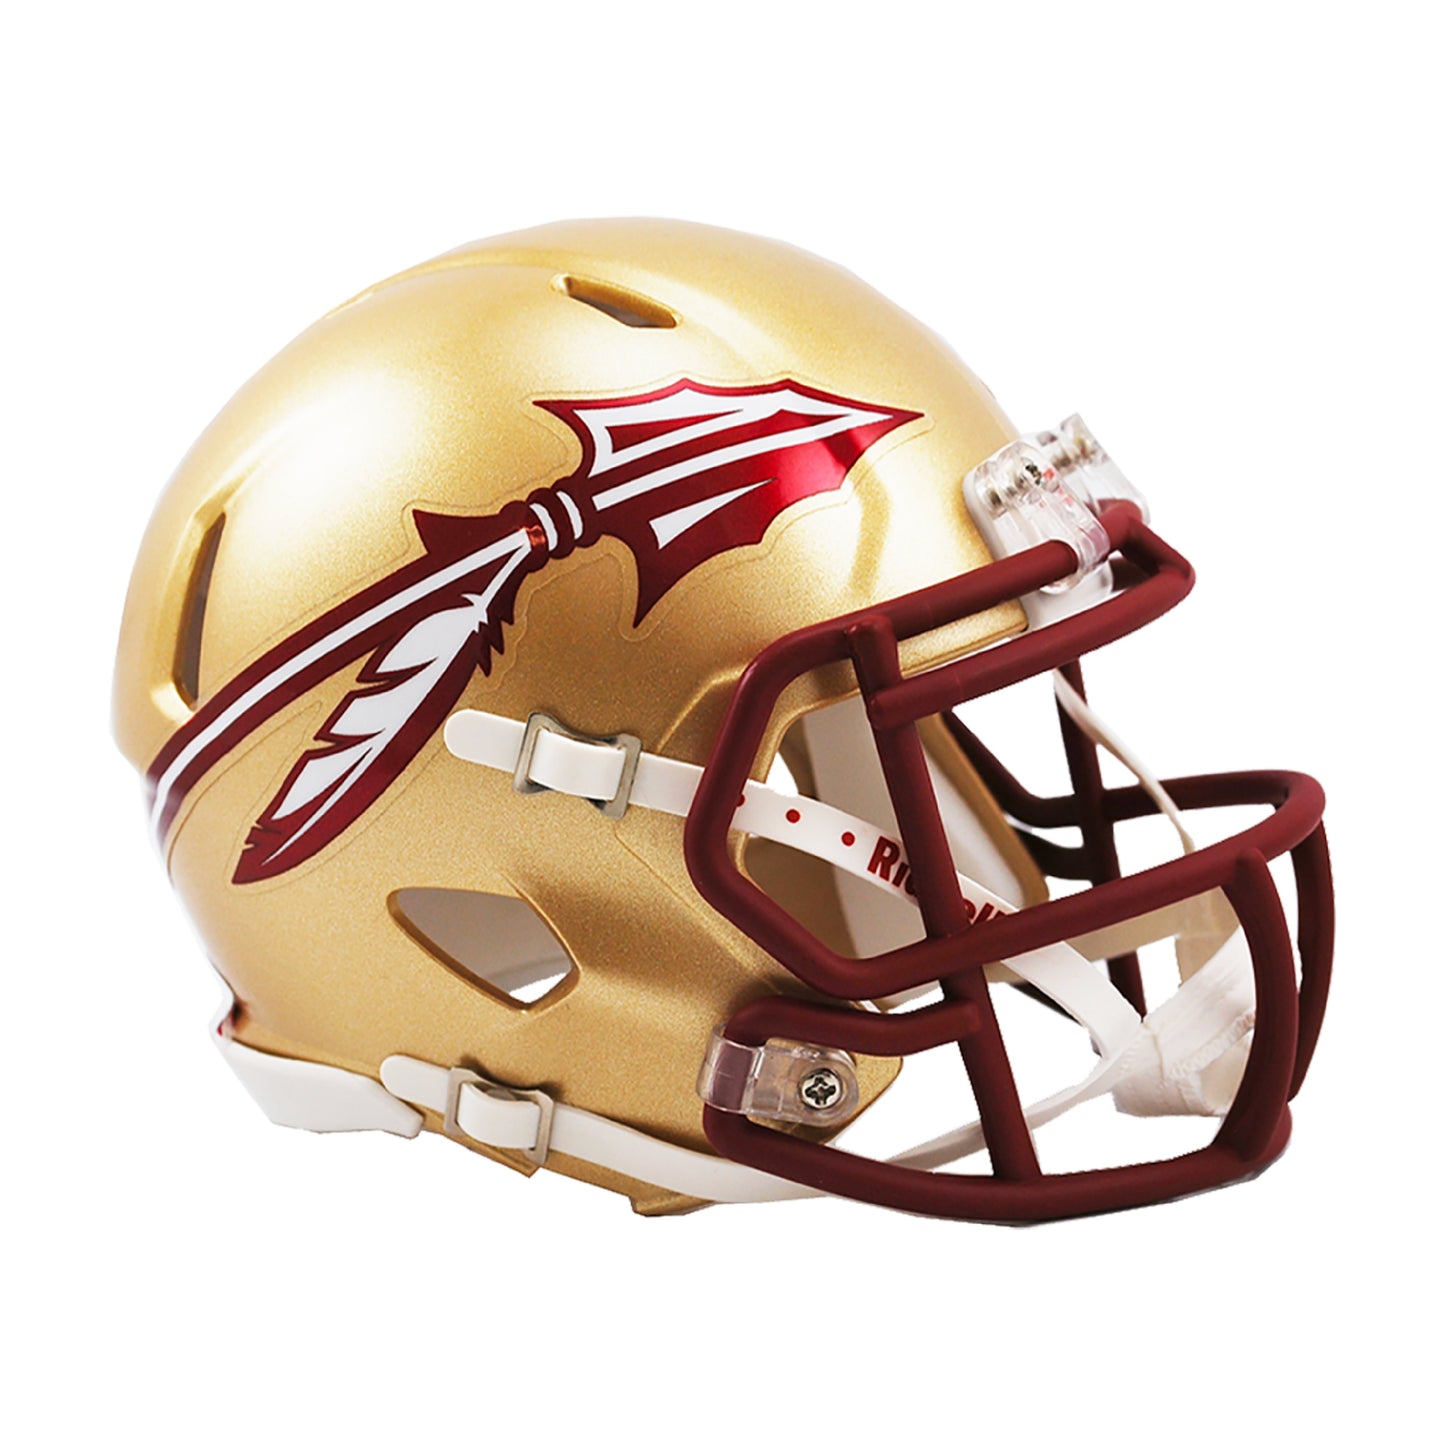 Florida State Seminoles Riddell Speed Mini Football Helmet